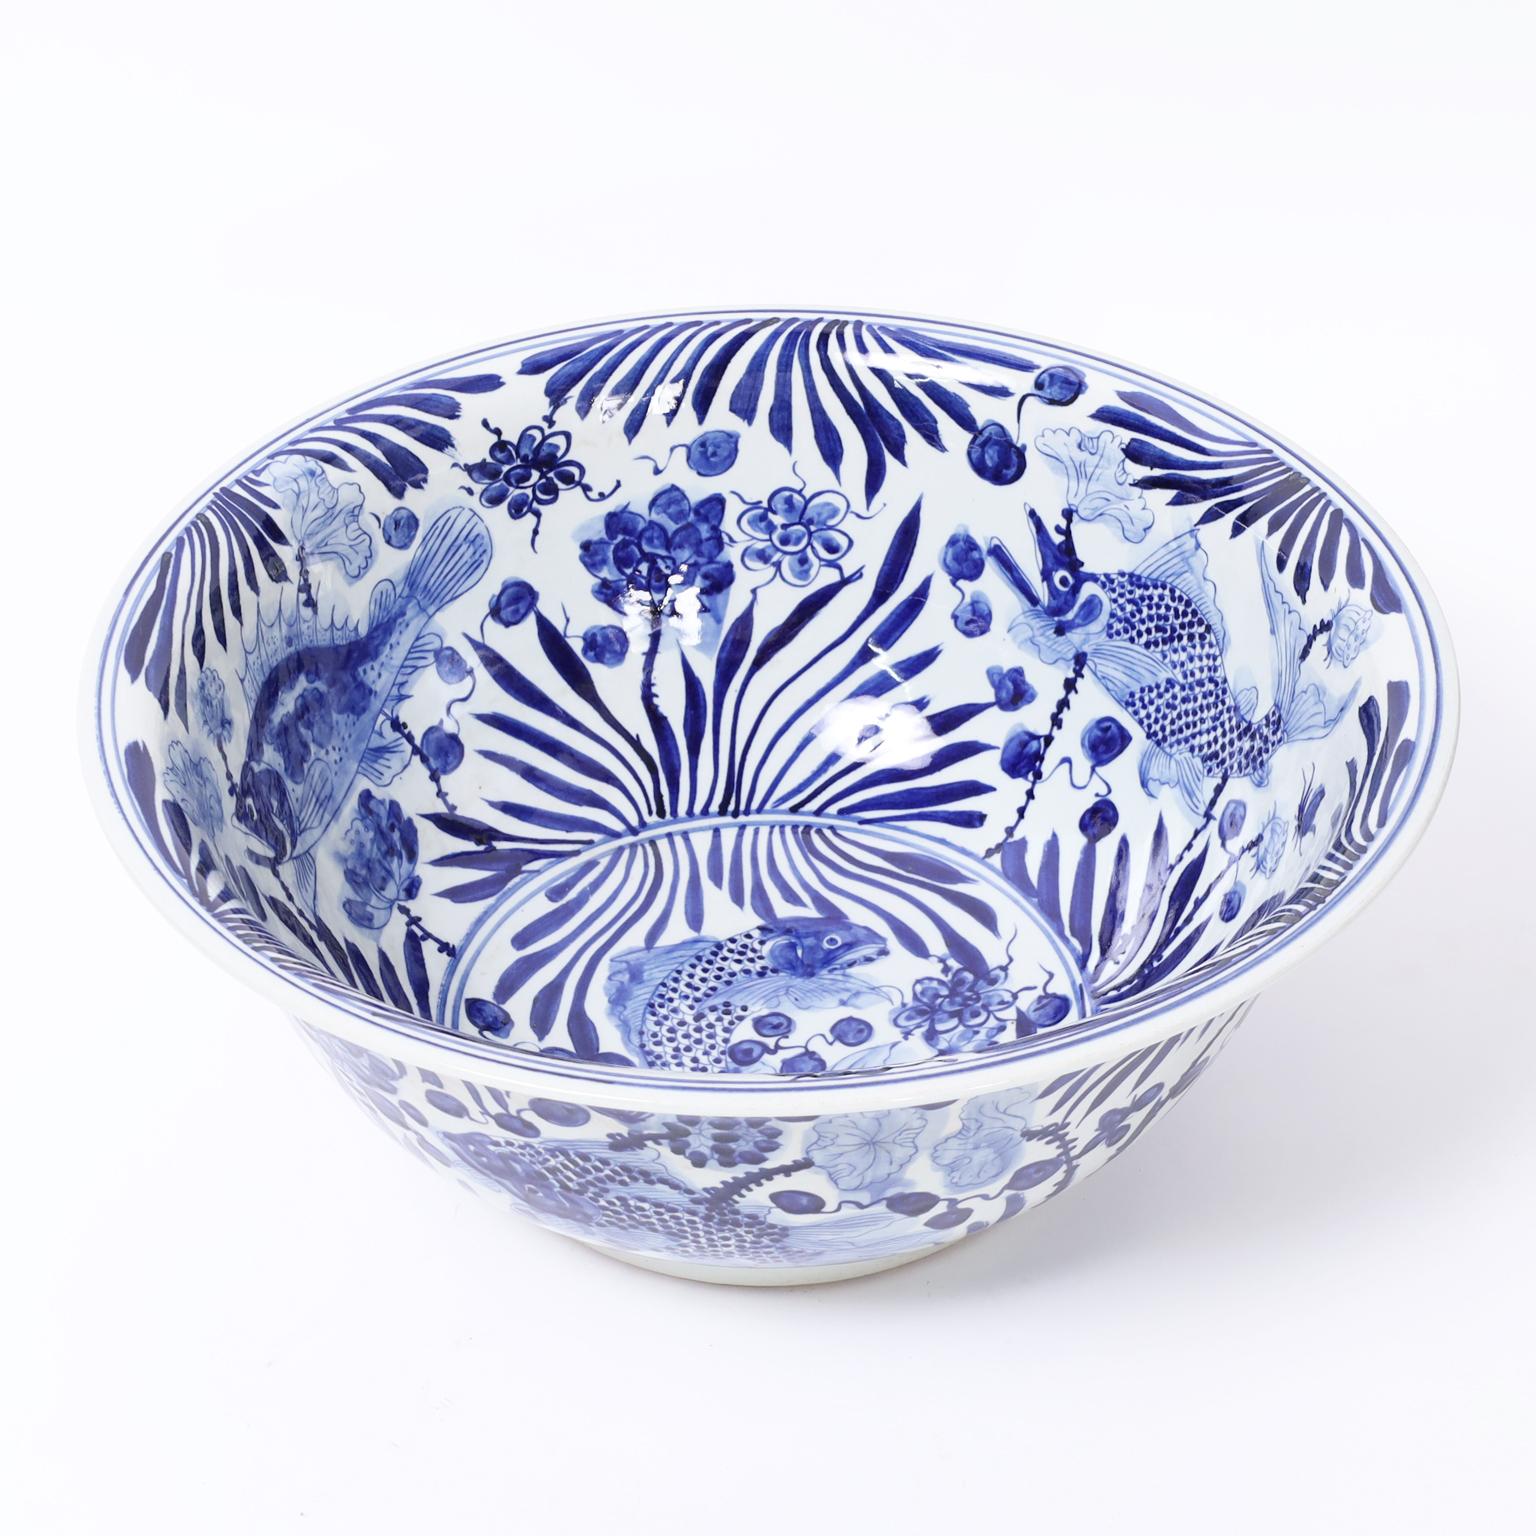 Grand bol chinois bleu et blanc décoré à la main de faune et de flore aquatiques avec une rare touche de fantaisie. 